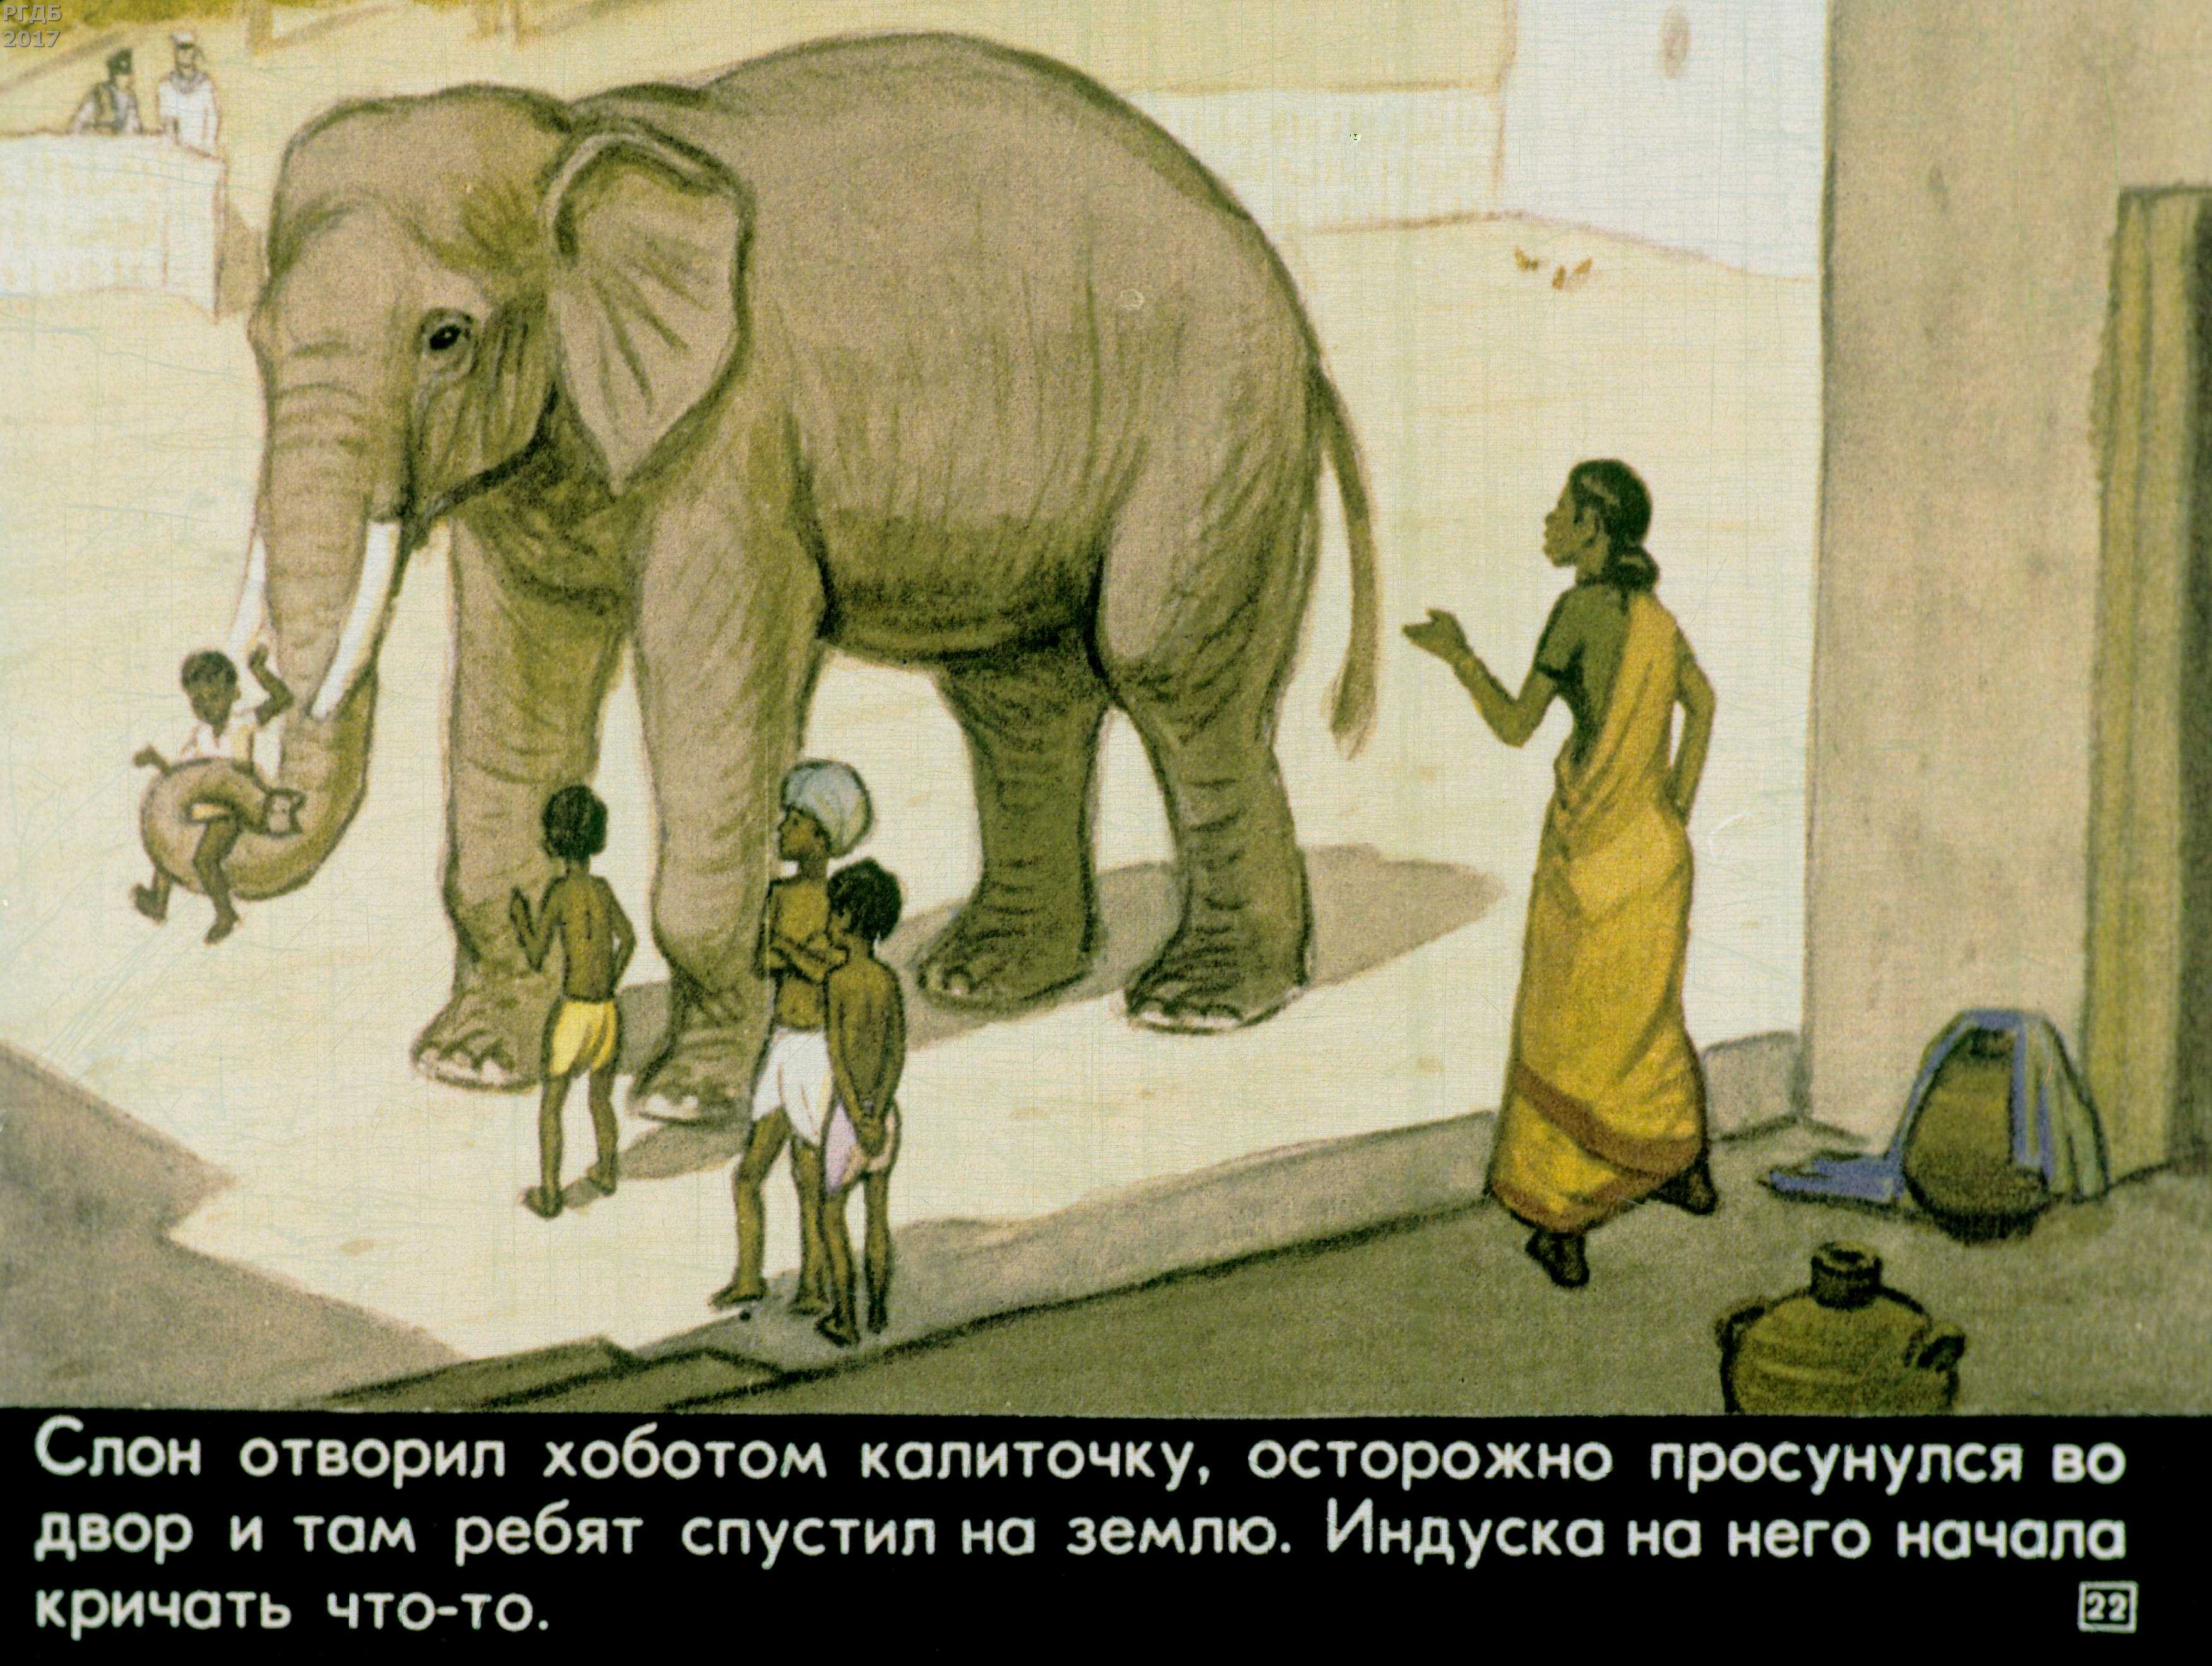 Рассказ слон текст. Куприн а. и. "слон". Иллюстрации к рассказу Житкова про слона. Иллюстрация к рассказу про слона Житков.